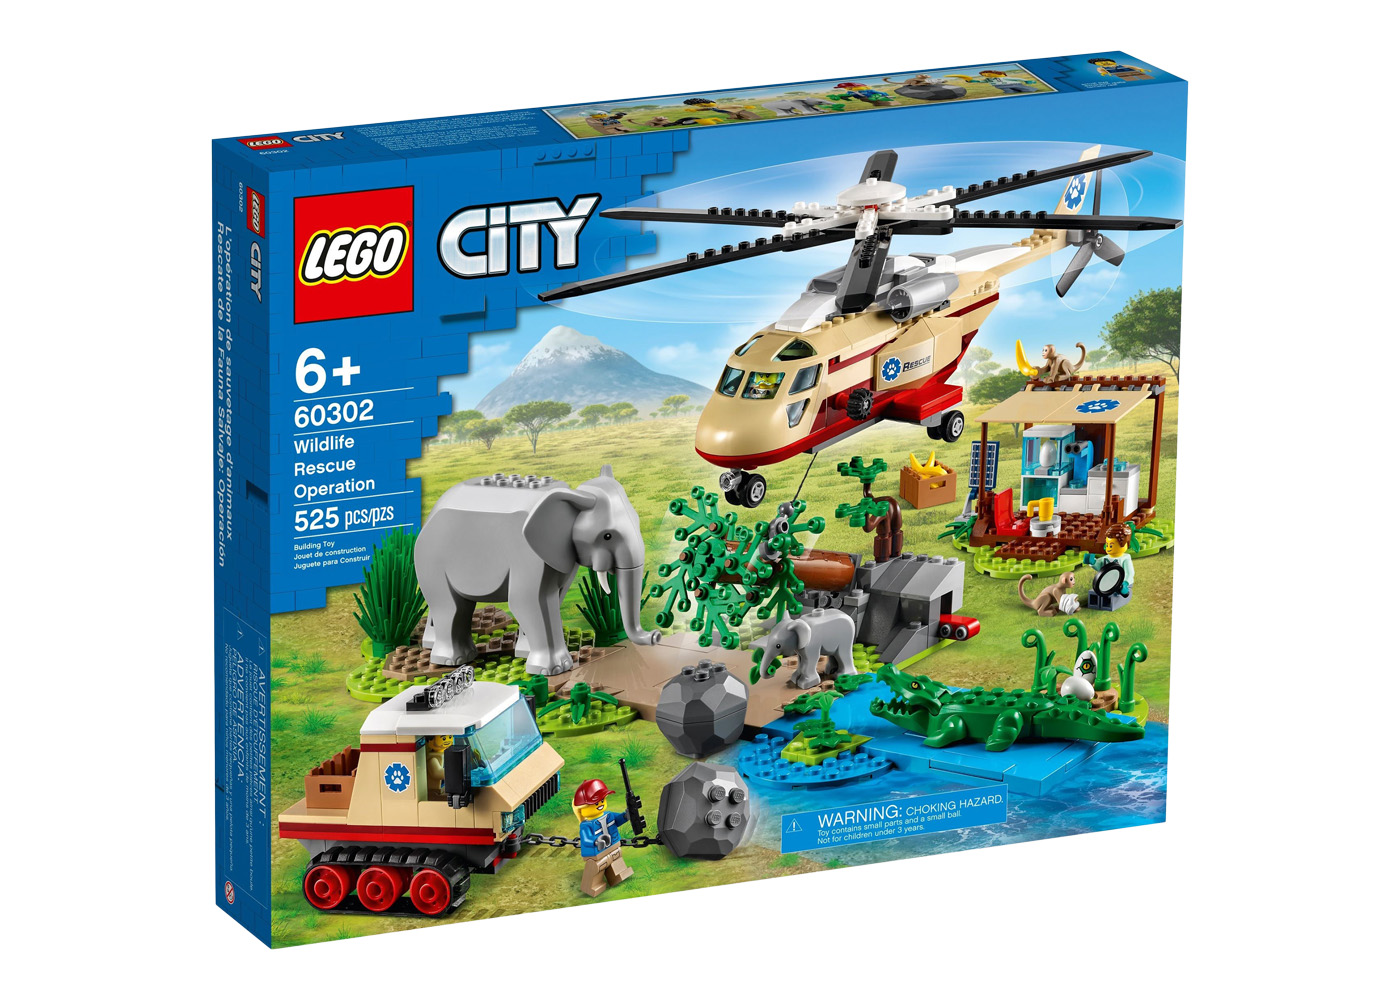 LEGO City Deep Sea Operation Base Set 60096 - US